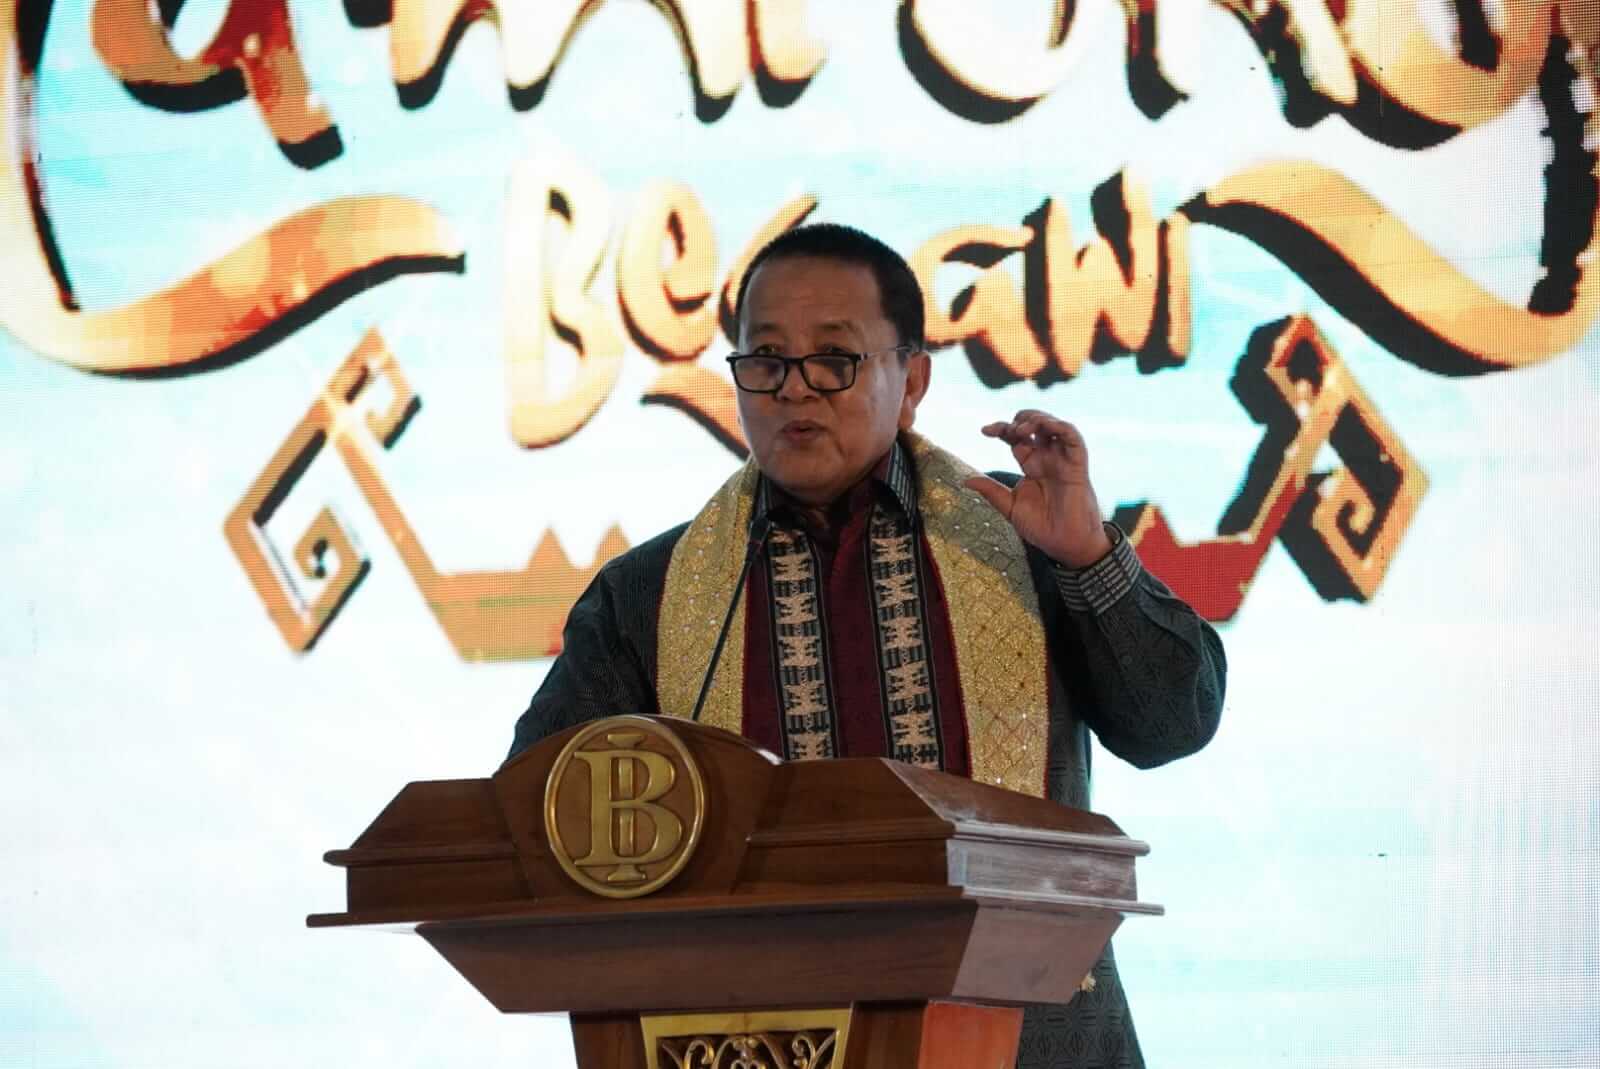 Lampung Begawi 2023 Resmi Dibuka, Gubernur Dorong Pengembangan UMKM Tingkatkan Pertumbuhan Ekonomi